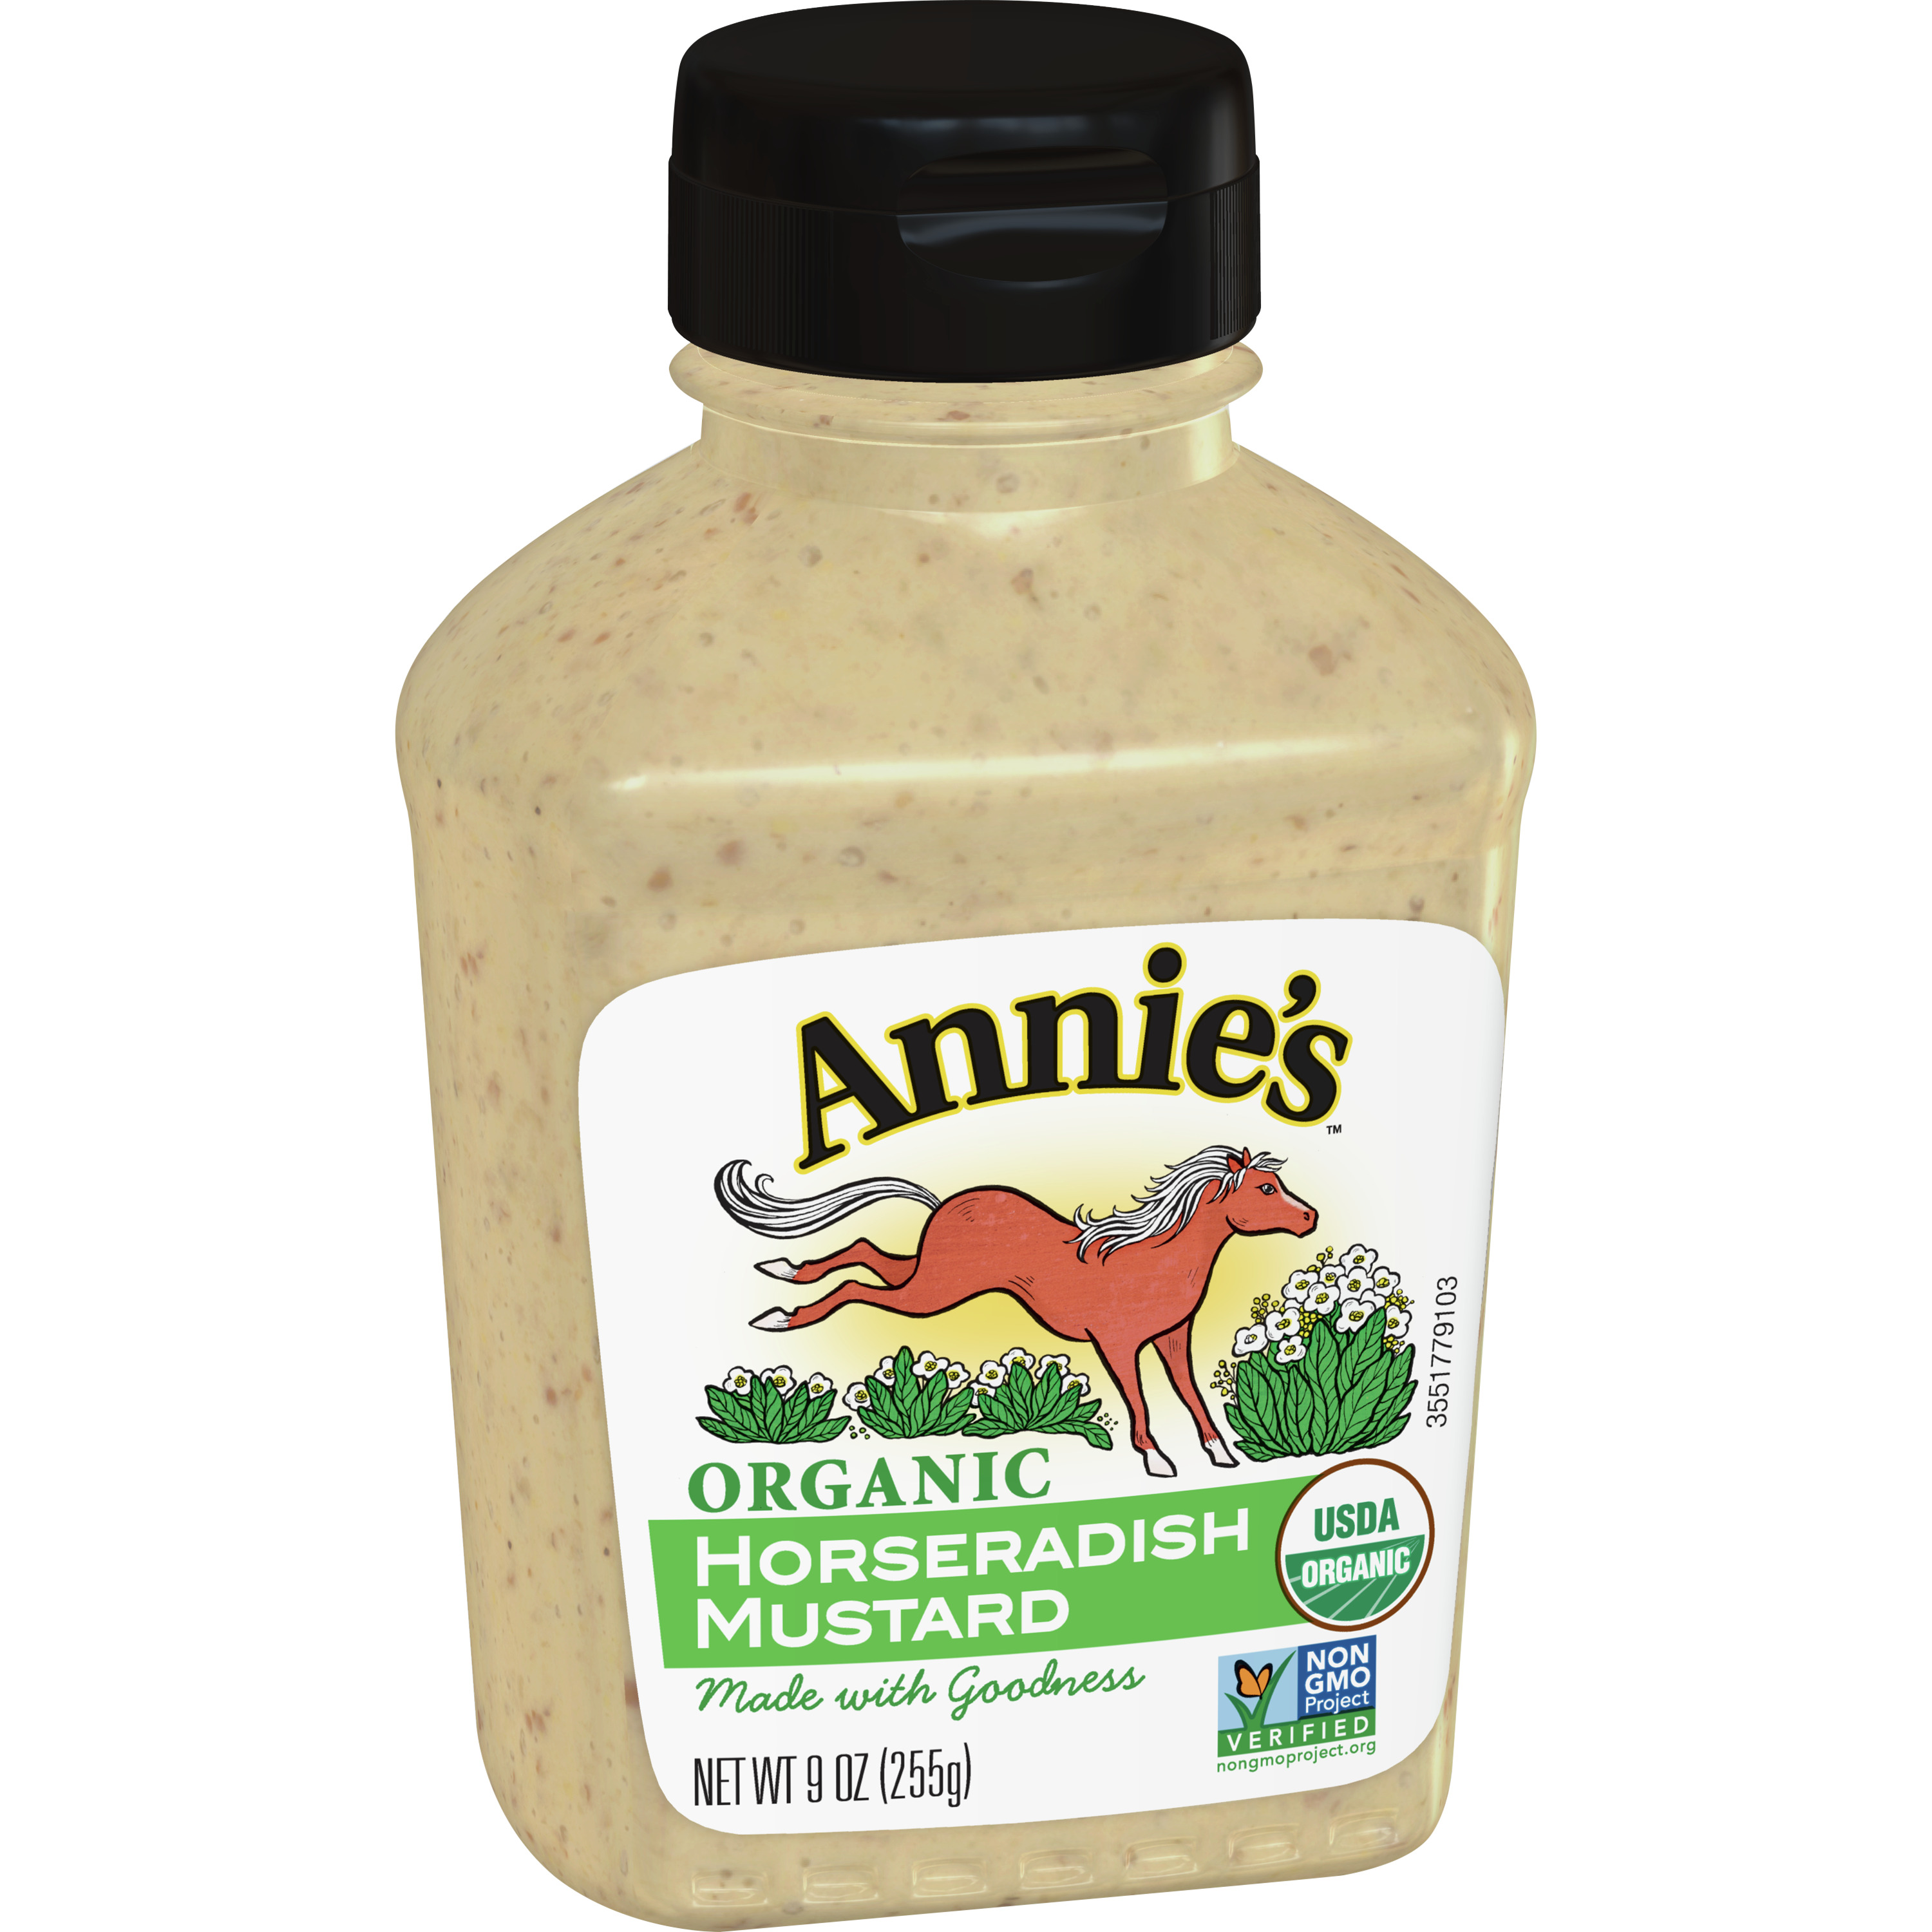 Annie's Organic Horseradish Mustard, Gluten Free, 9 oz. - image 1 of 10